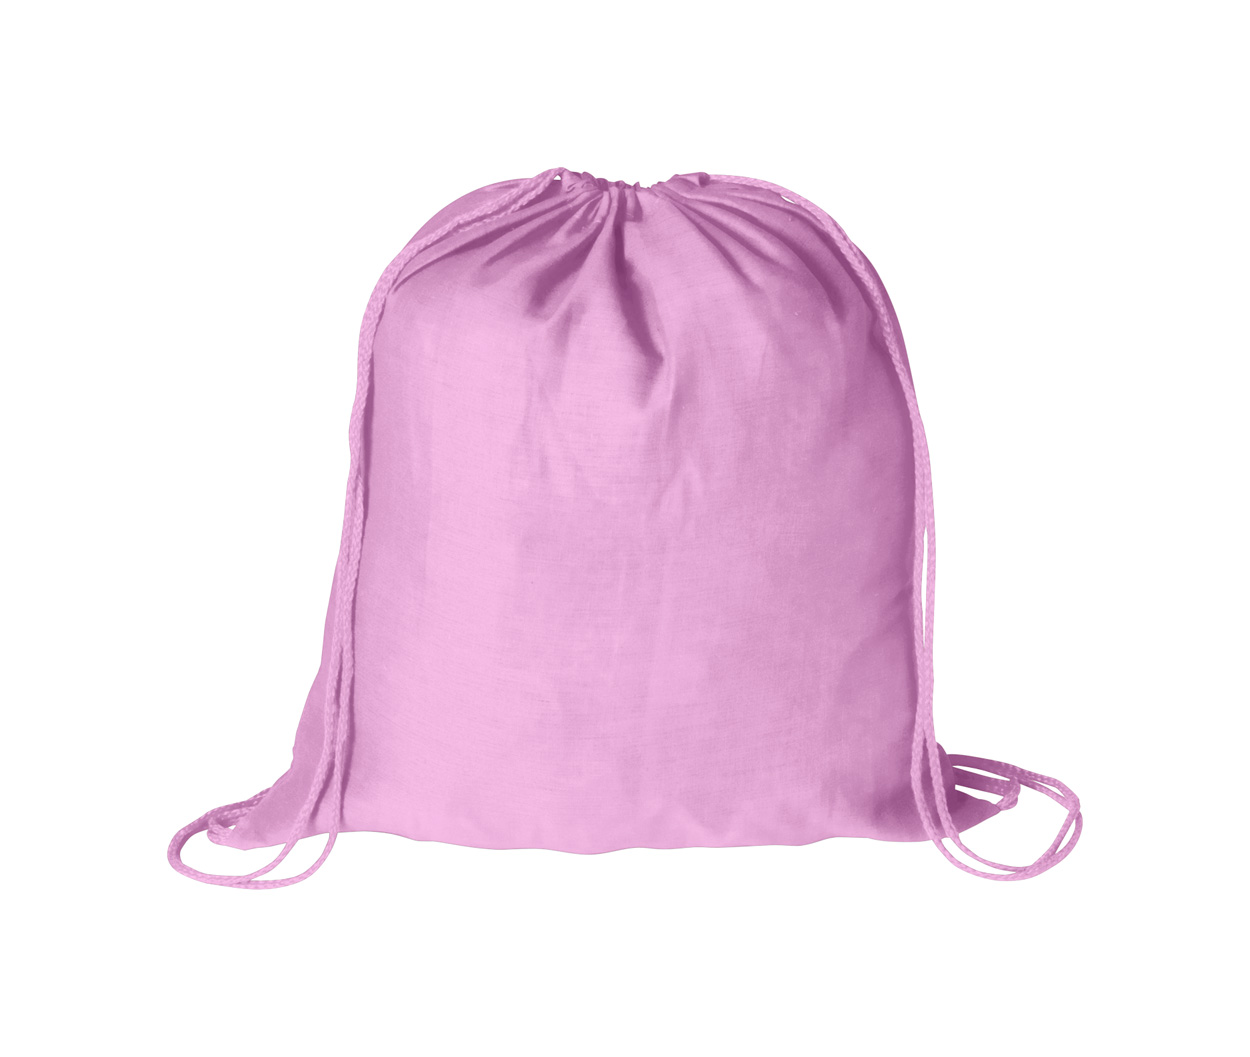 Drawstring bass bag - pink